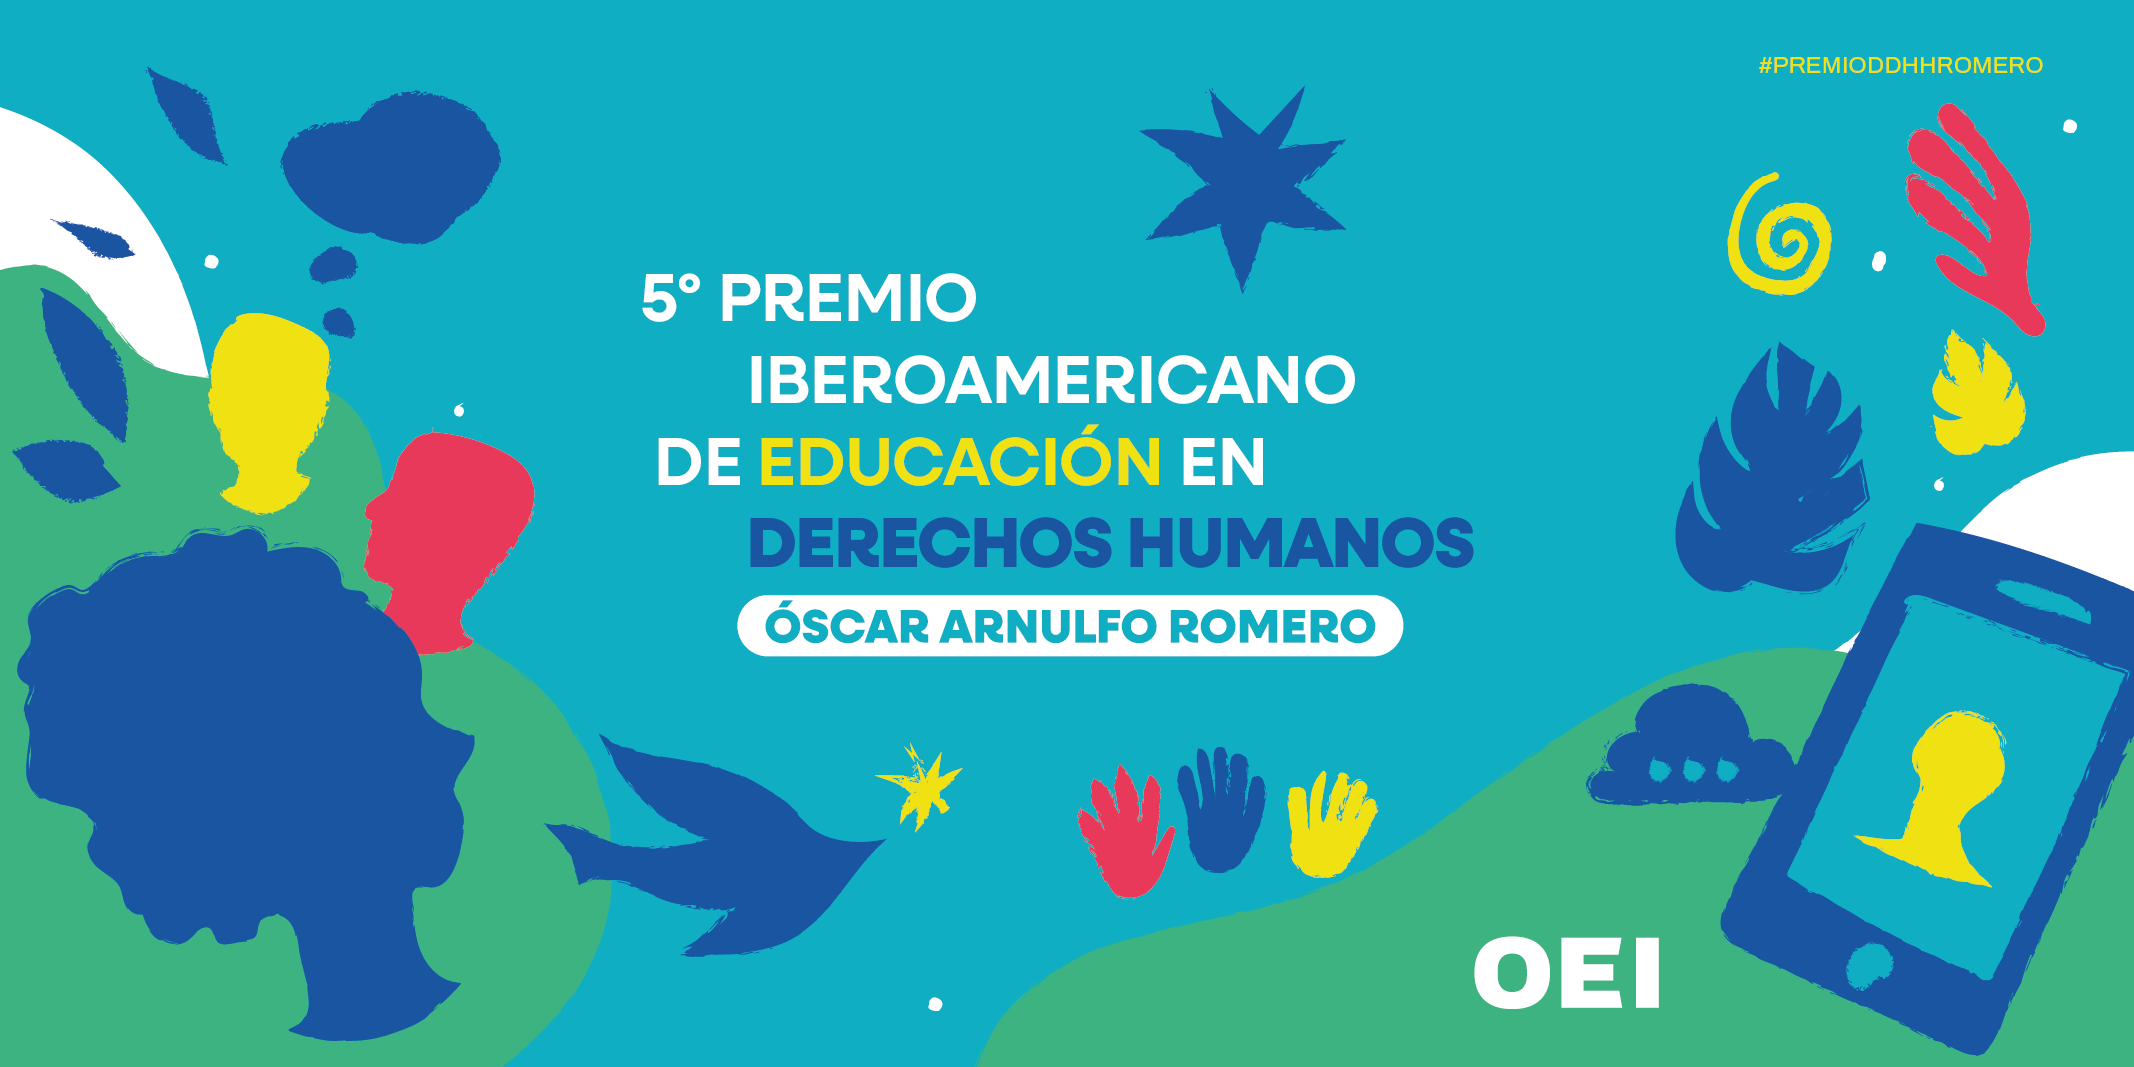 La OEI convocará en enero el Premio Iberoamericano de Educación en Derechos Humanos Óscar Romero